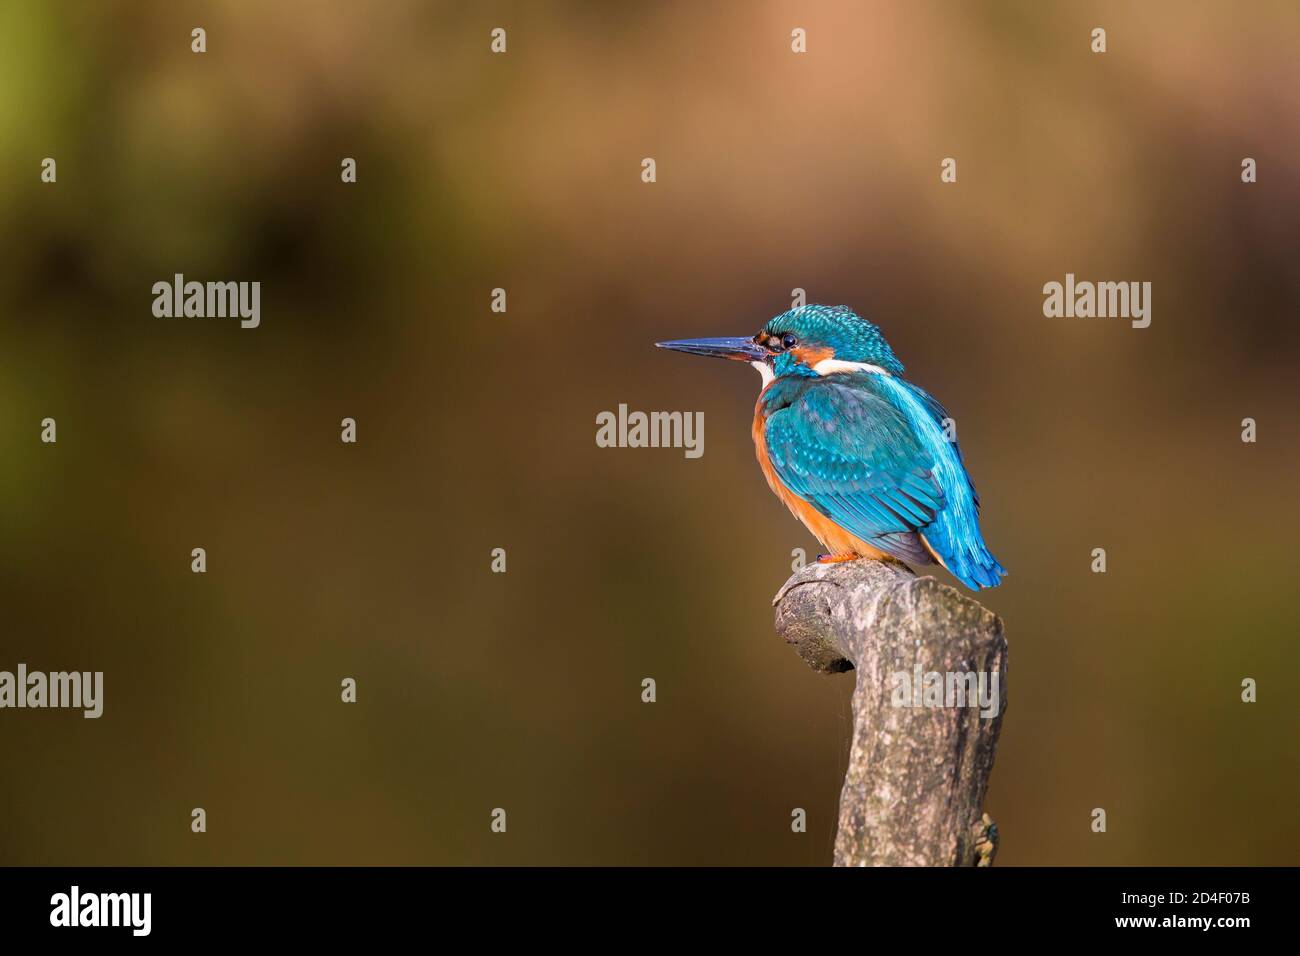 Vue de côté gros plan de l'oiseau sauvage de kingfisher du Royaume-Uni (Alcedo atthis) isolé en plein air perching sur poteau par côté de l'eau de rivière. Copier l'espace vers la gauche. Banque D'Images